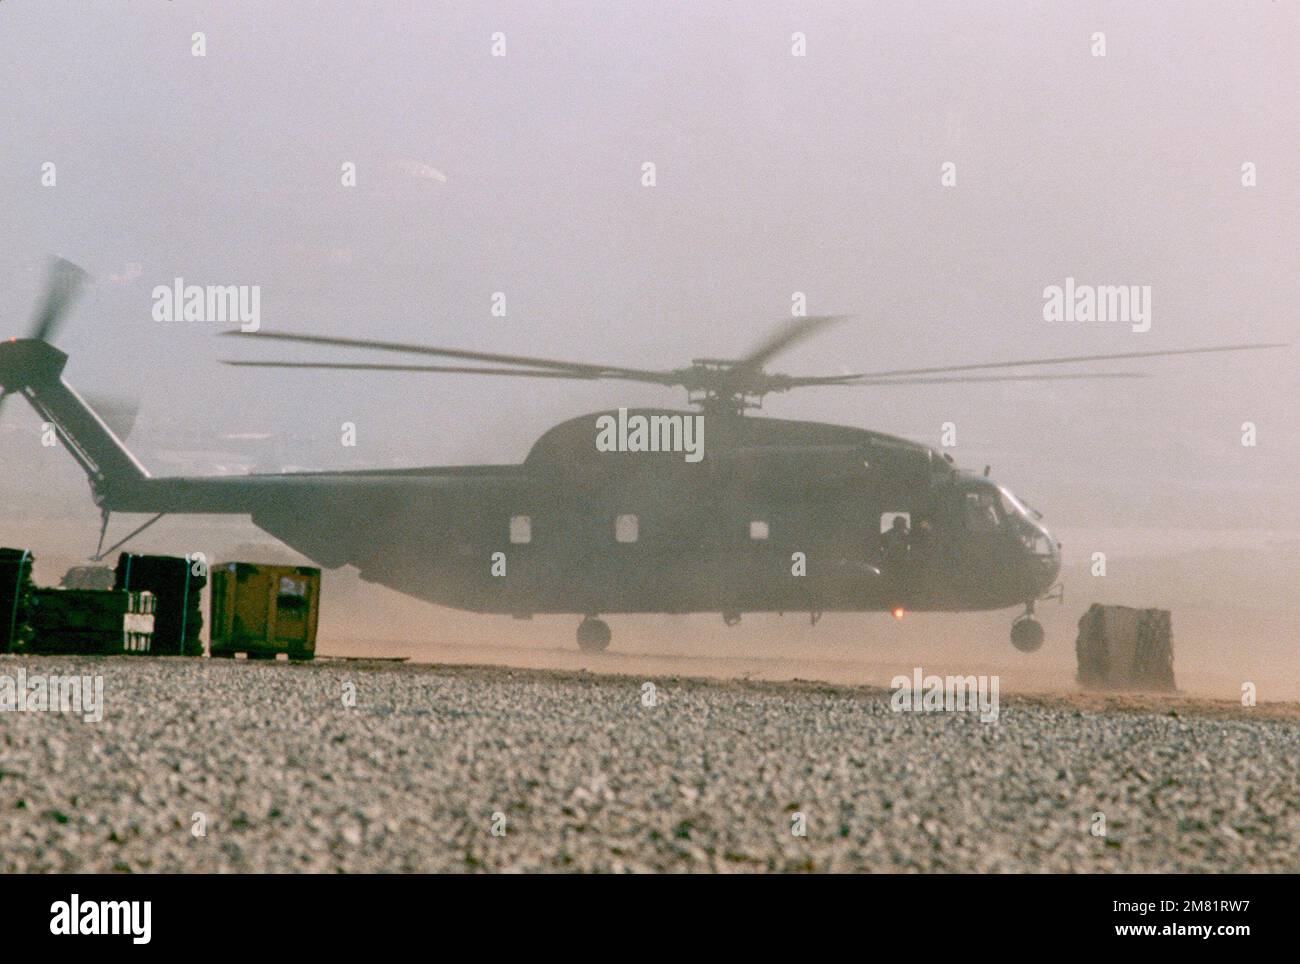 Vista lateral derecha de un helicóptero CH-53D Super Stallion de Marine en uso durante una operación multinacional de mantenimiento de la paz. Base: Beirut País: Líbano (LBN) Foto de stock